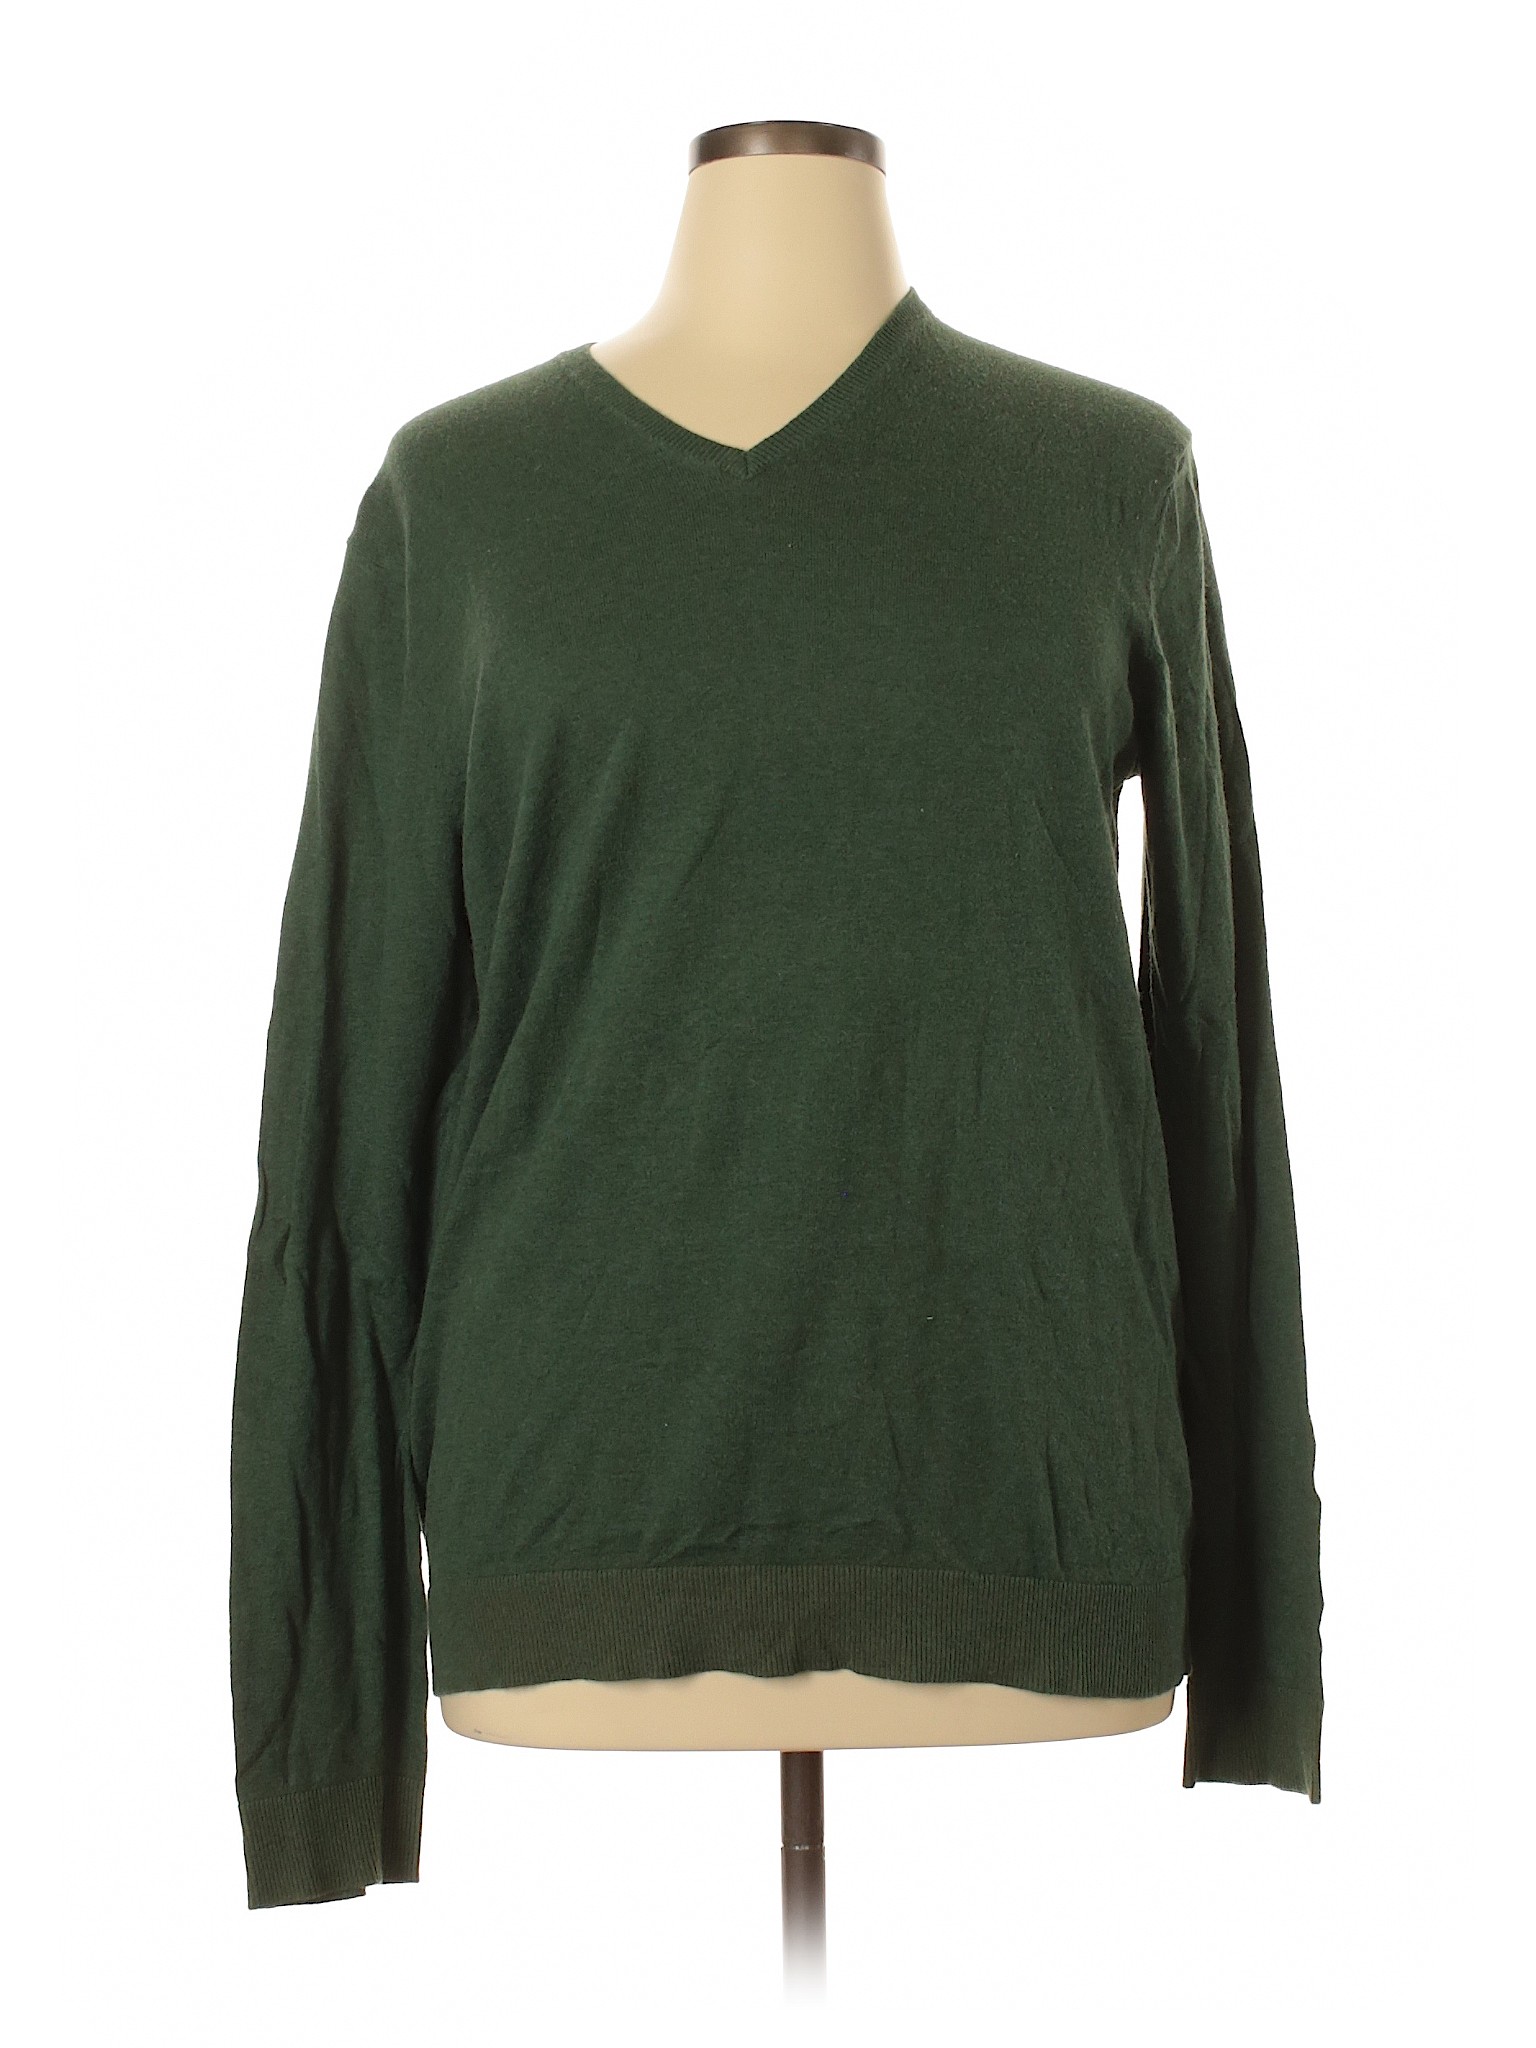 Gap Outlet Women Green Pullover Sweater XL | eBay